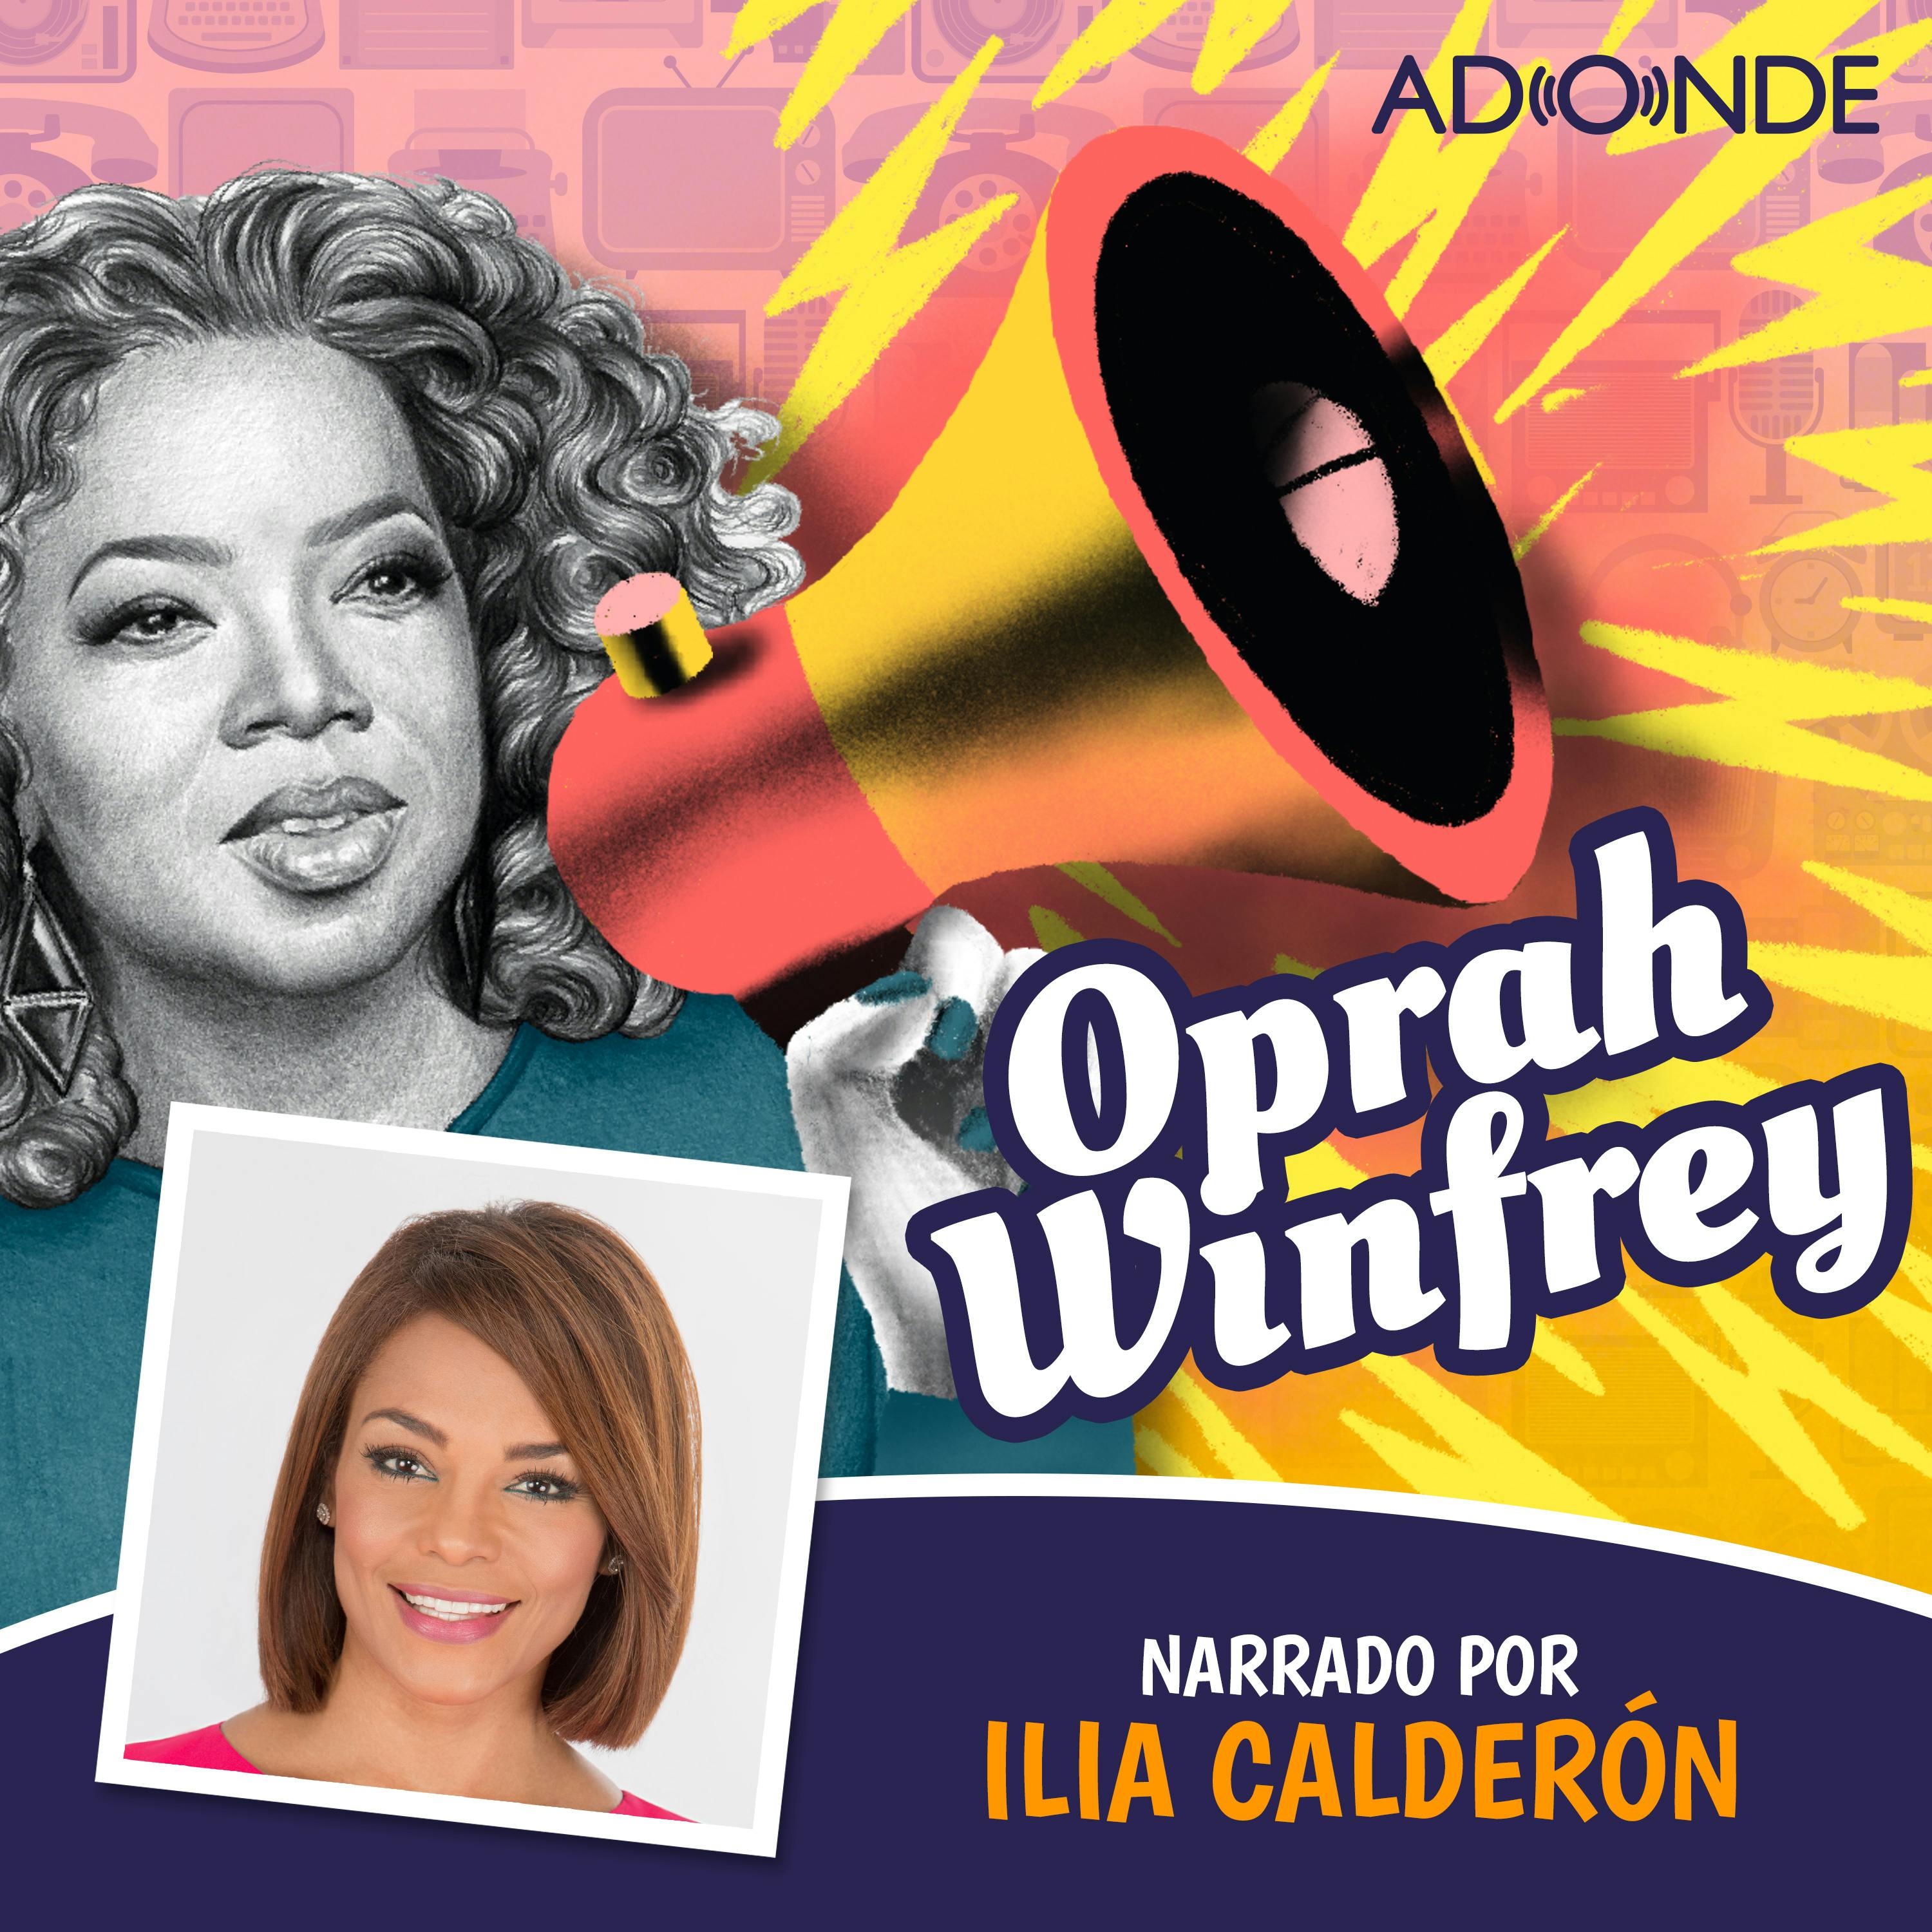 Oprah Winfrey narrado por Ilia Calderón